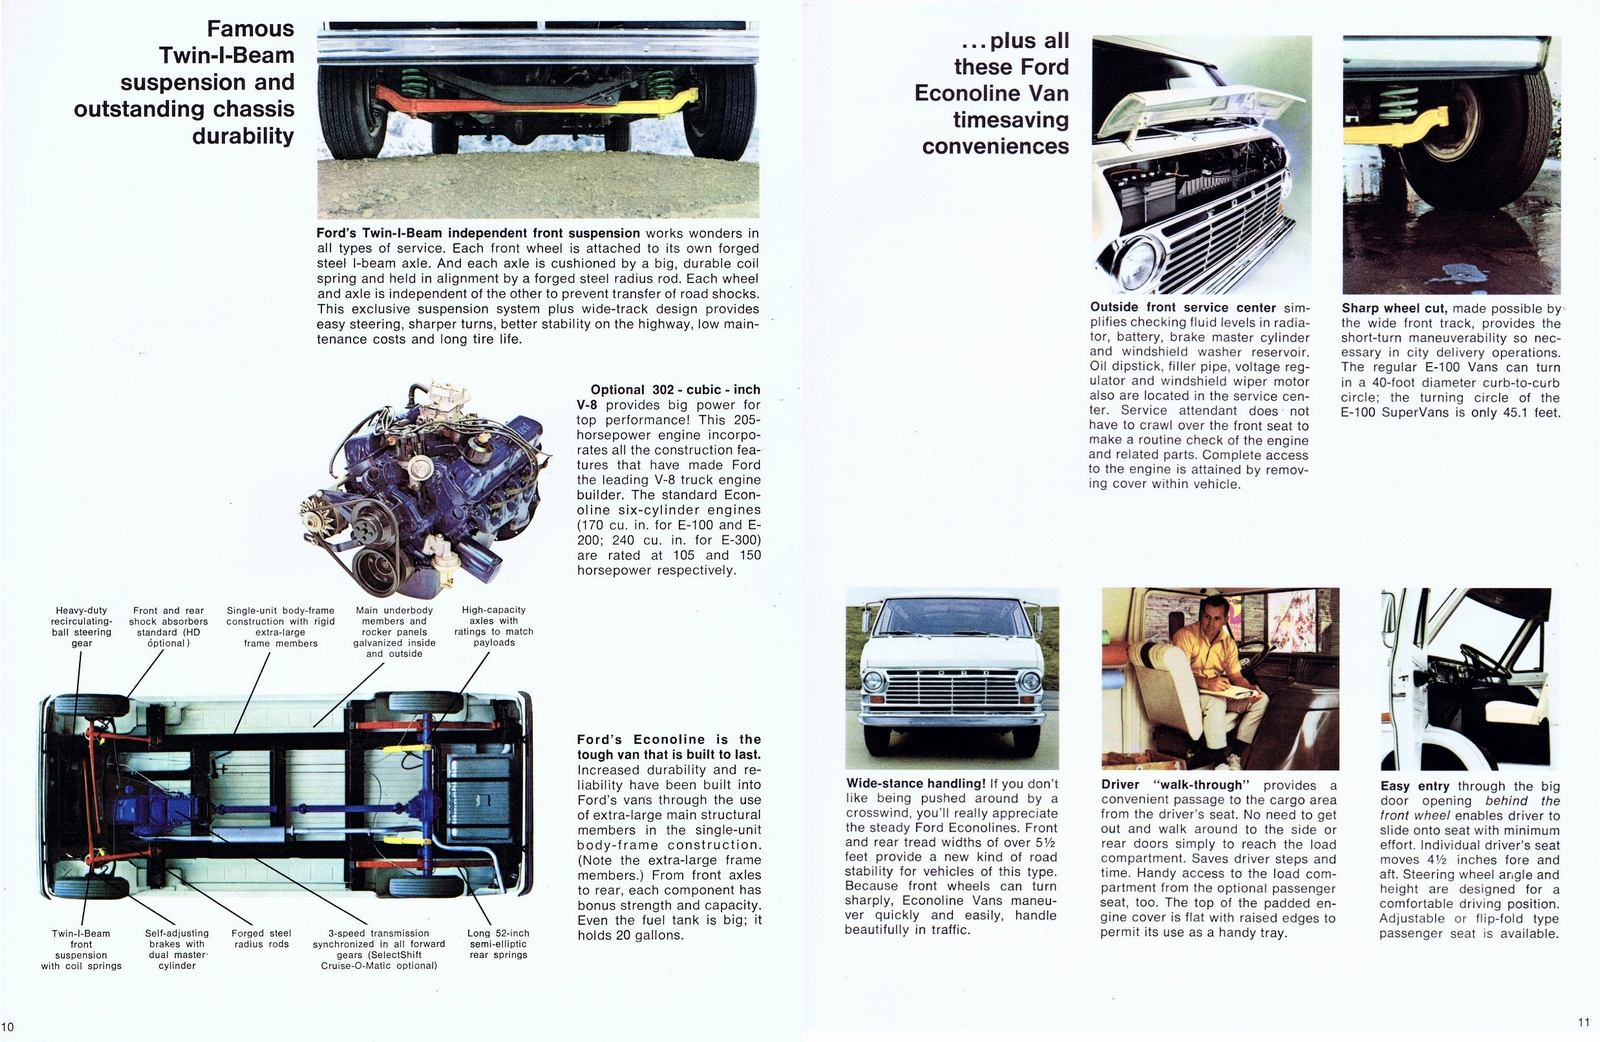 n_1970 Ford Econoline Vans (Cdn)-10-11.jpg